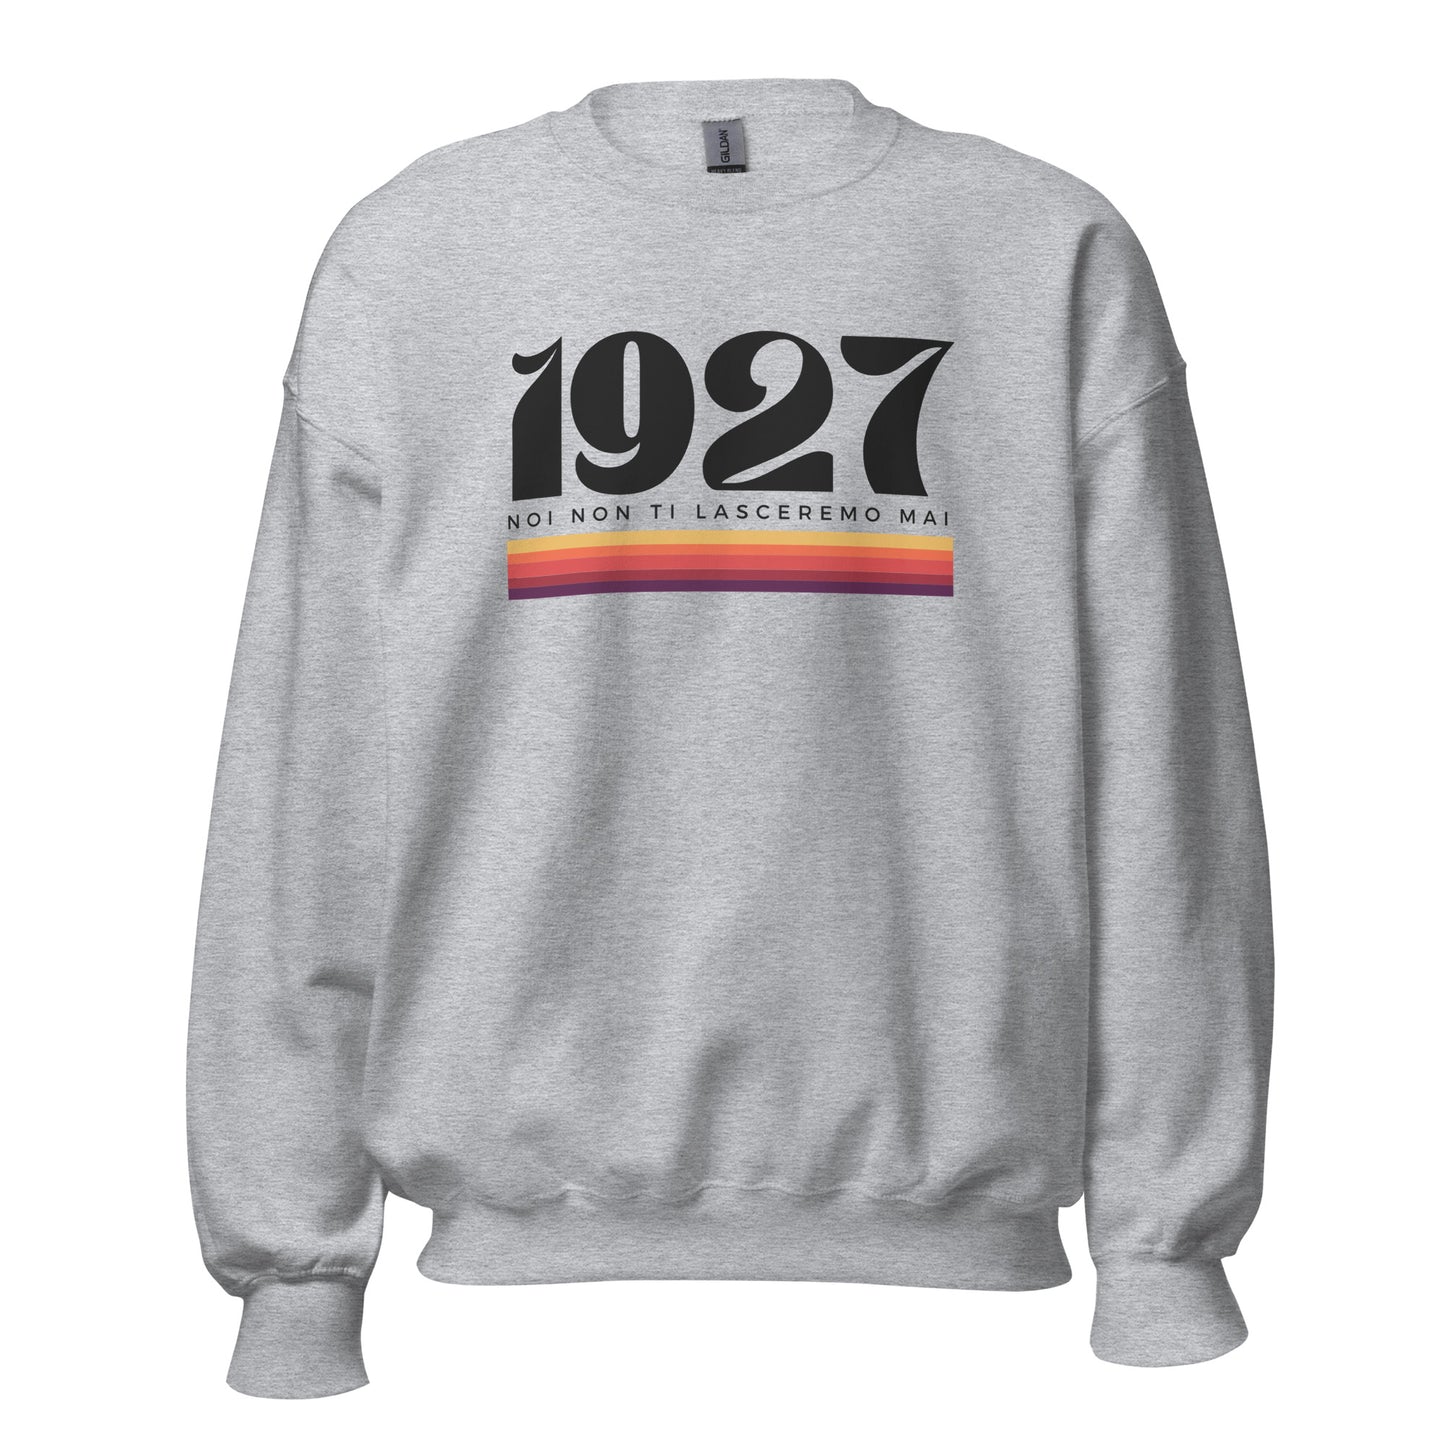 1927 Noi non ti lasceremo mai - Unisex Sweatshirt